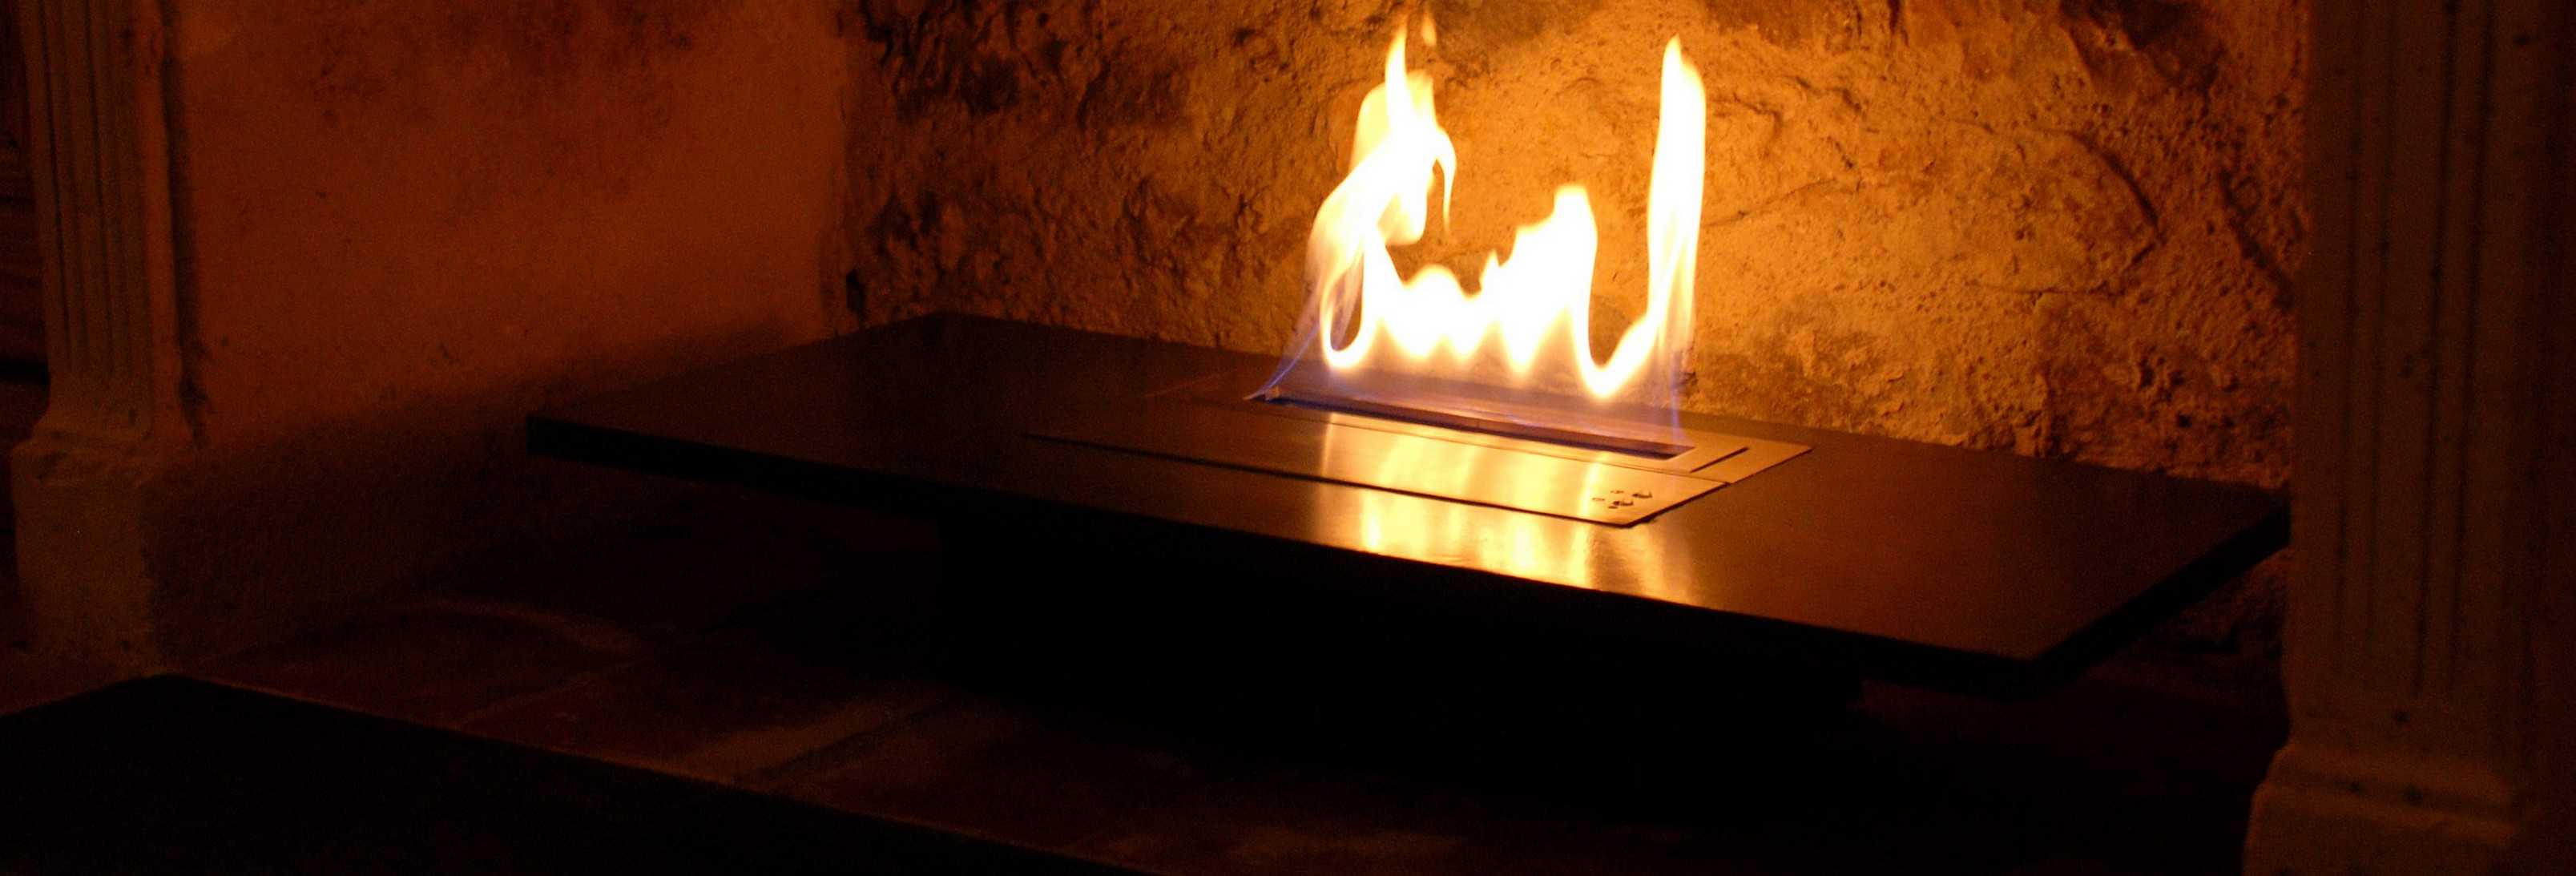 Brûleur ethanol dans cheminée en pierre